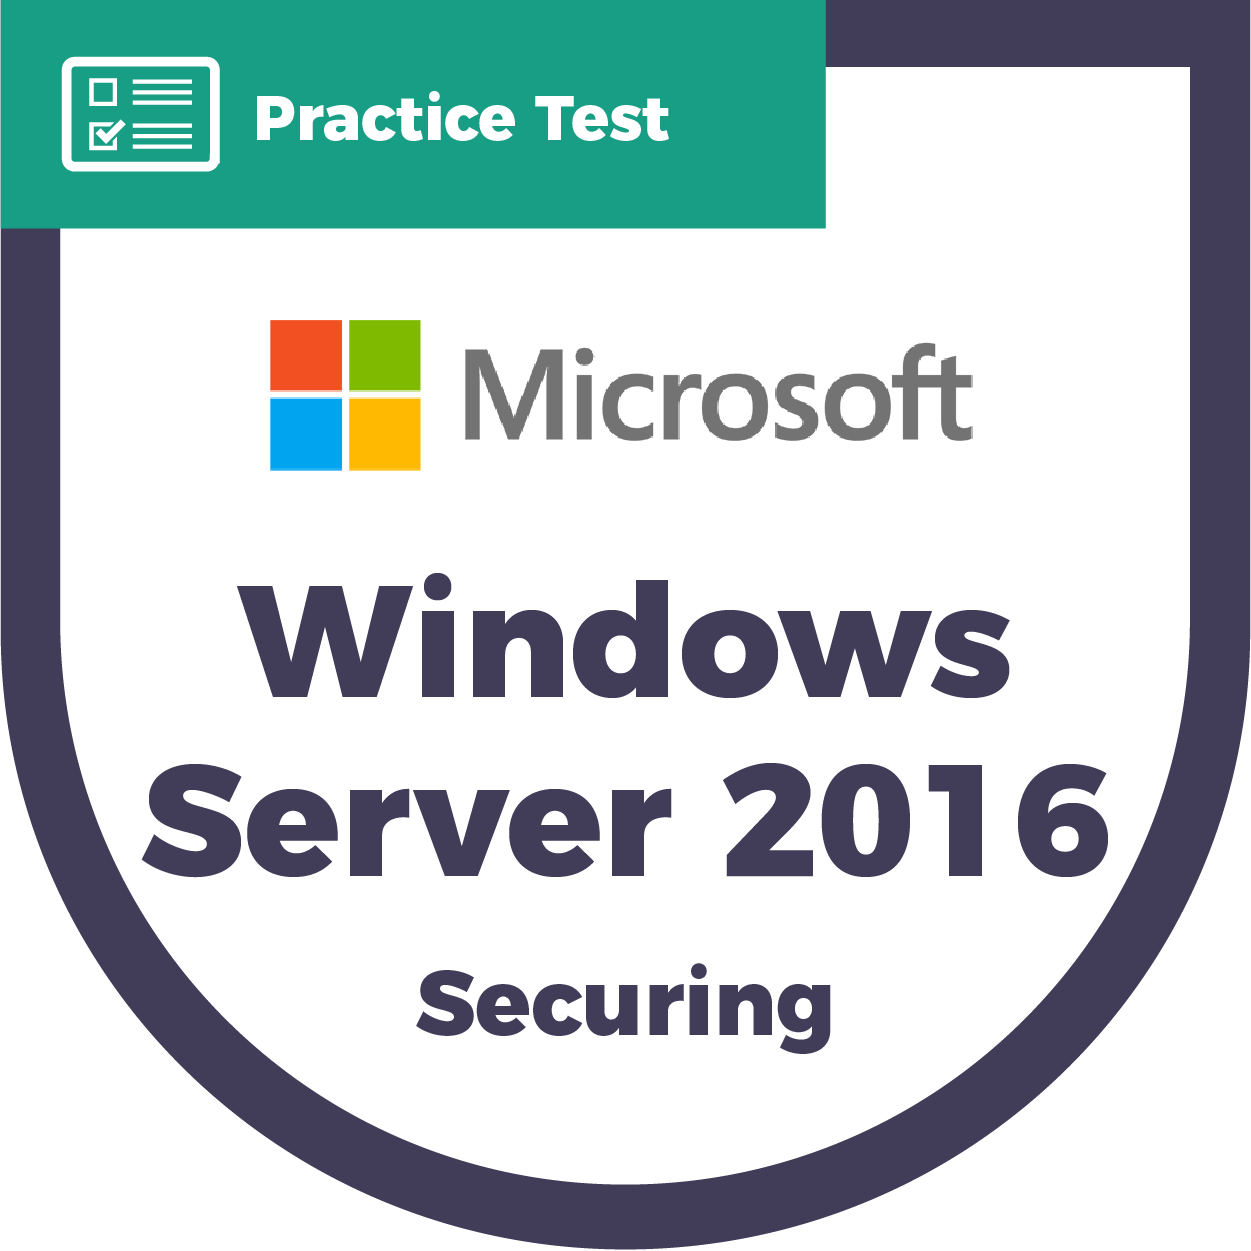 Windows Server 2016 (MCSE) | Practice Test - CyberVista